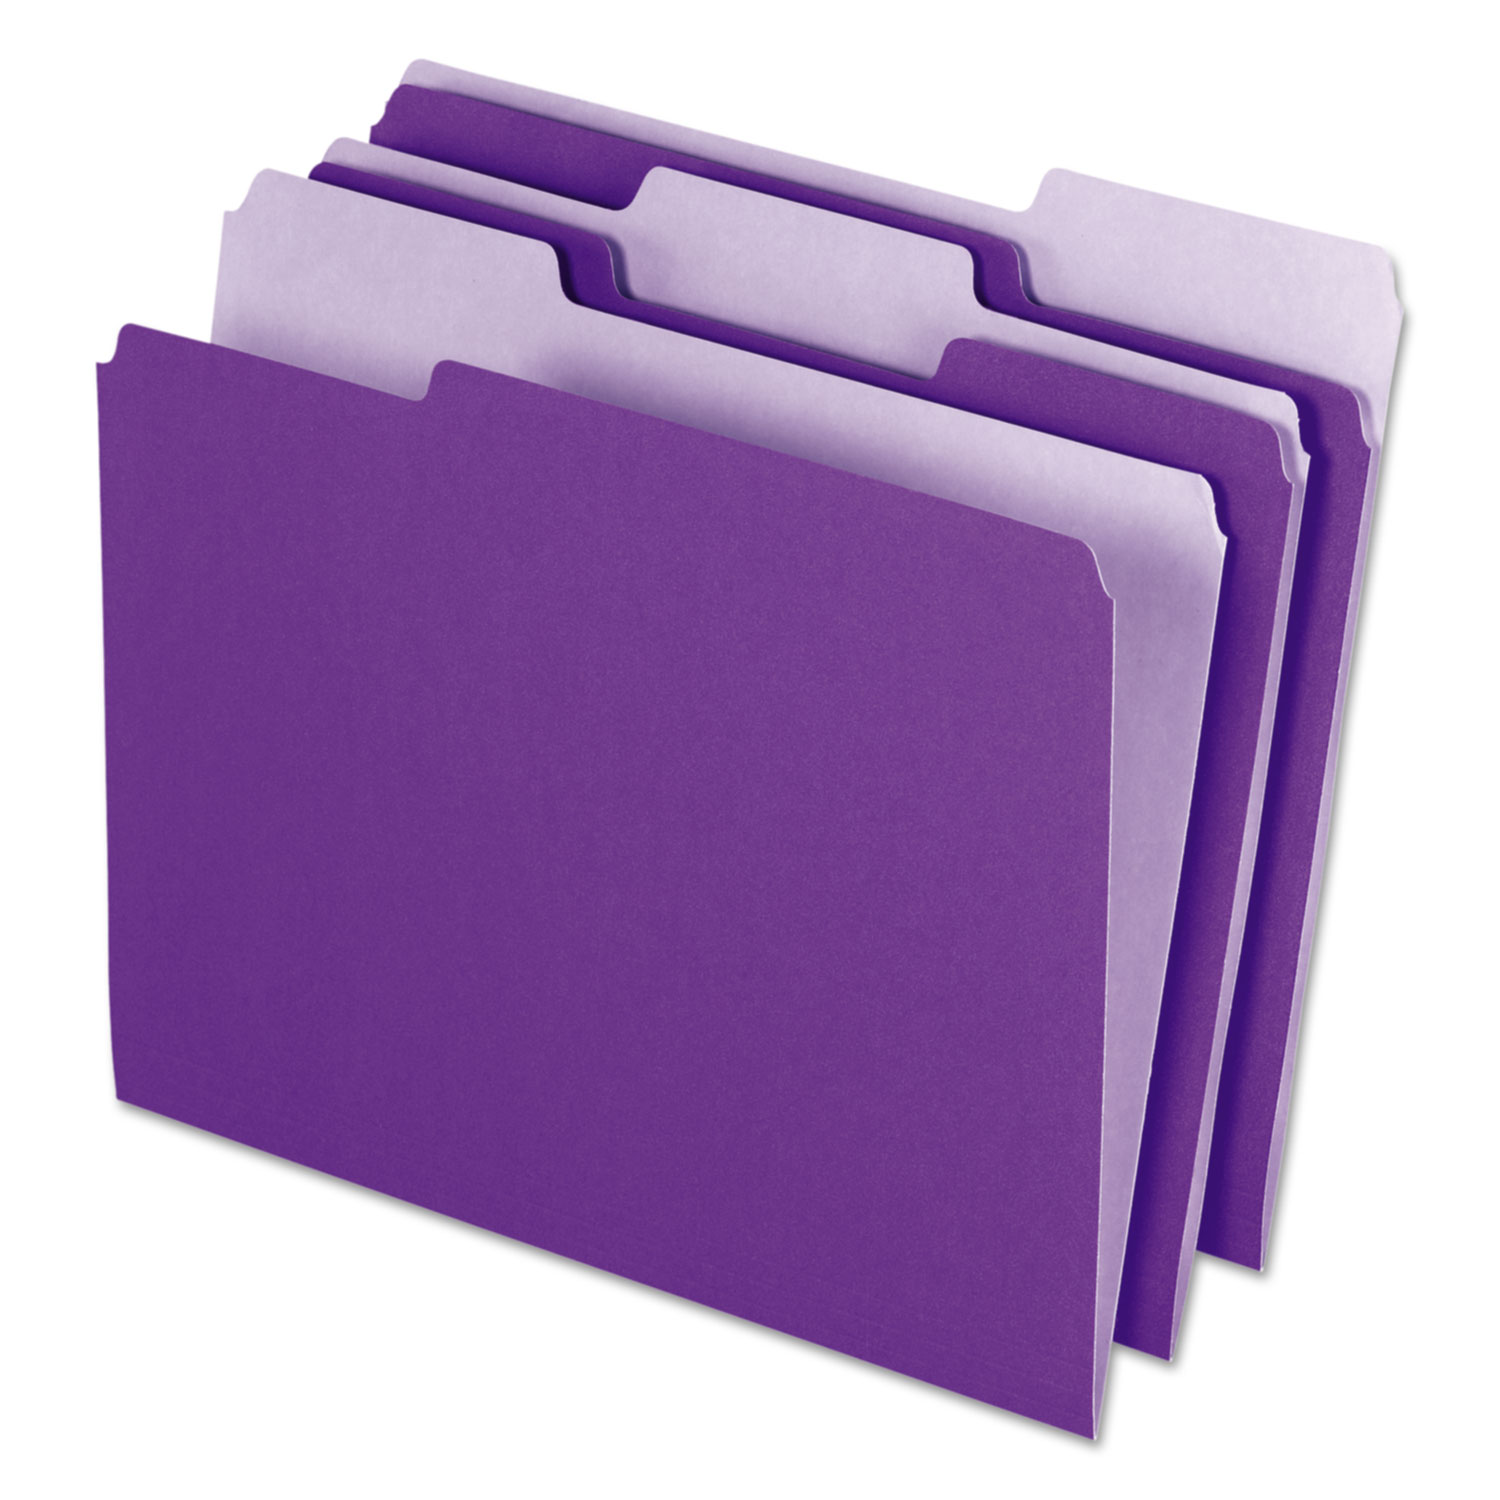  Pendaflex 4210 1/3 VIO Interior File Folders, 1/3-Cut Tabs, Letter Size, Violet, 100/Box (PFX421013VIO) 